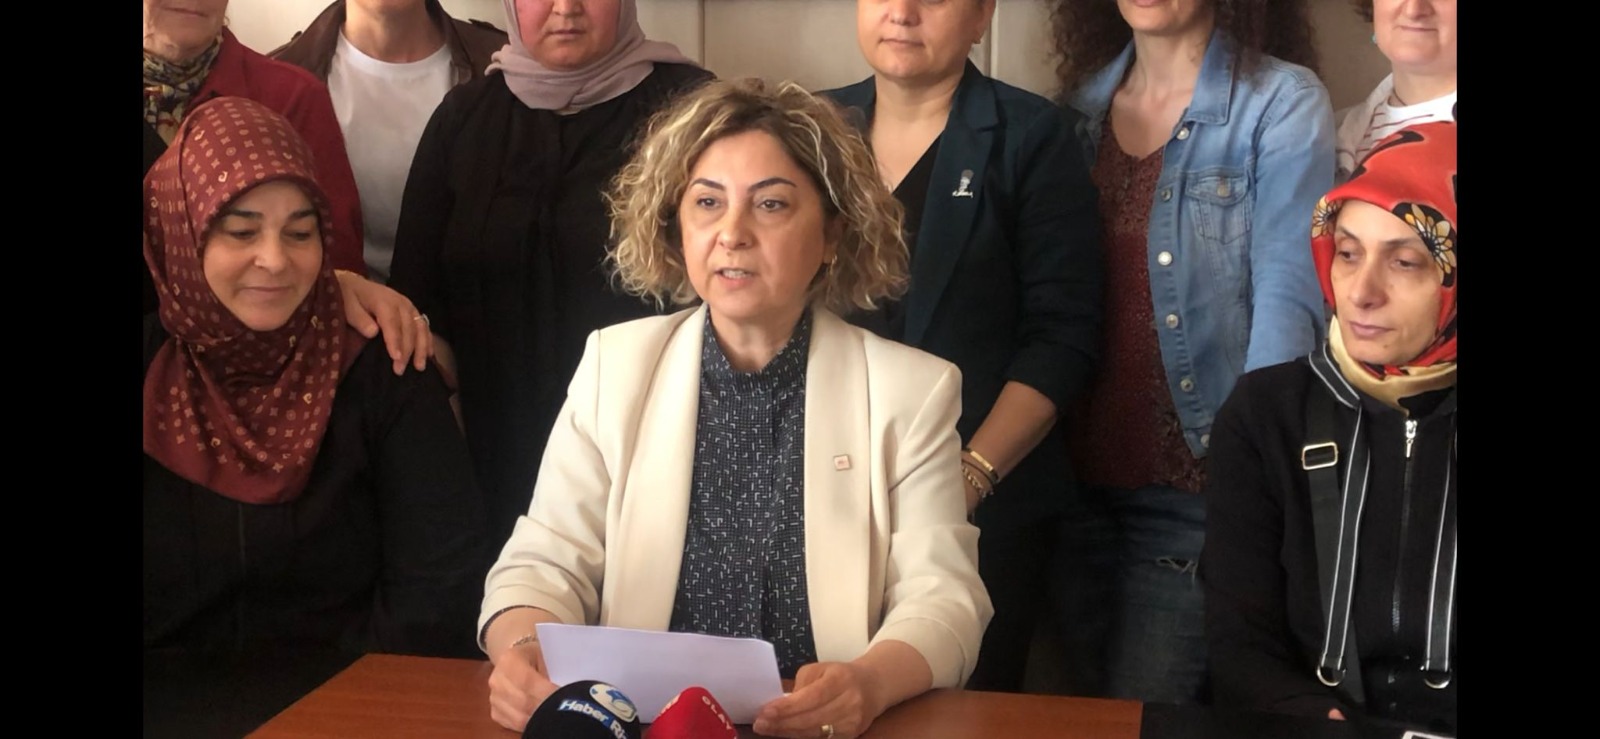 Rize CHP Kadın Kolları Eski Başkanı Nurdan Ardal: ‘Parti İçerisinde Ötekileştirildim’